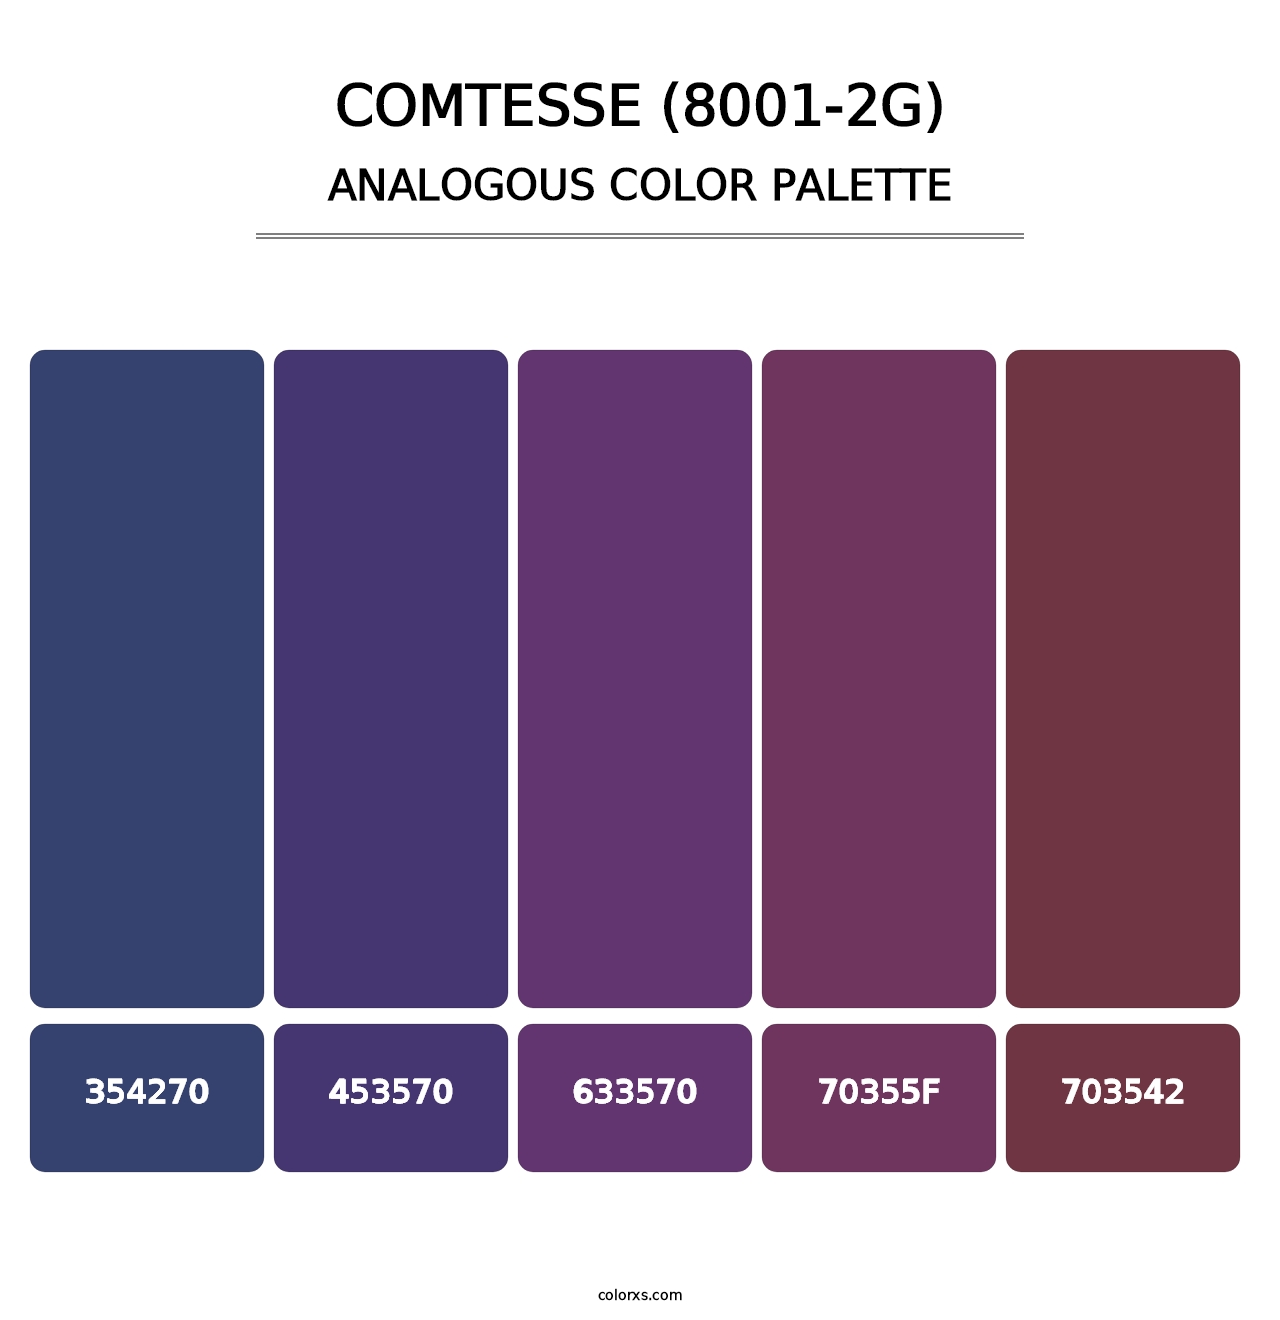 Comtesse (8001-2G) - Analogous Color Palette